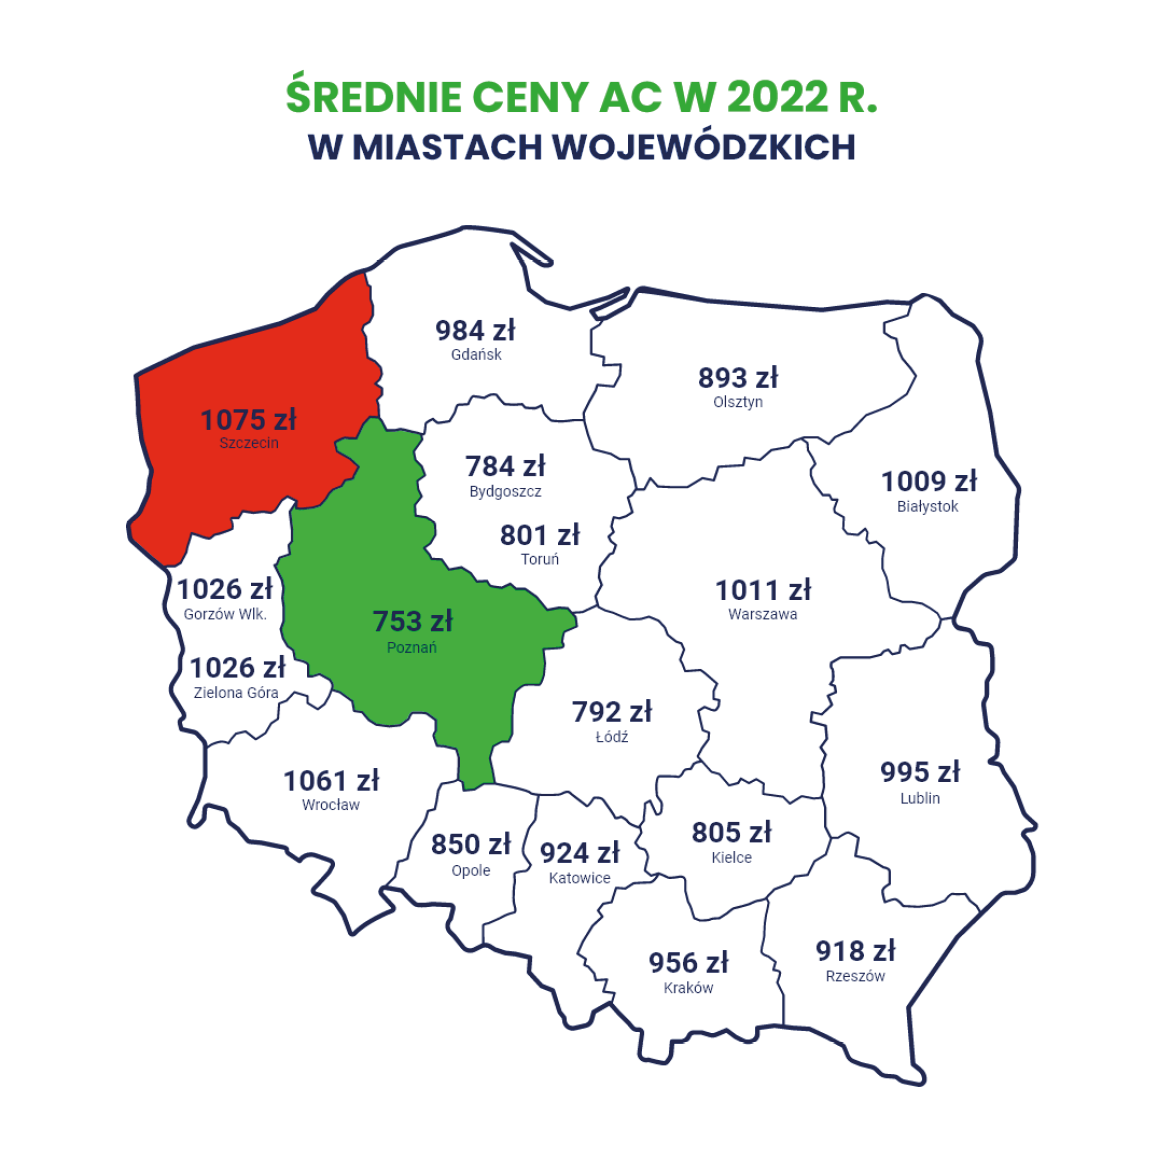 Najdrożej za AC w 2022 r. zapłaciliśmy w Szczecinie.